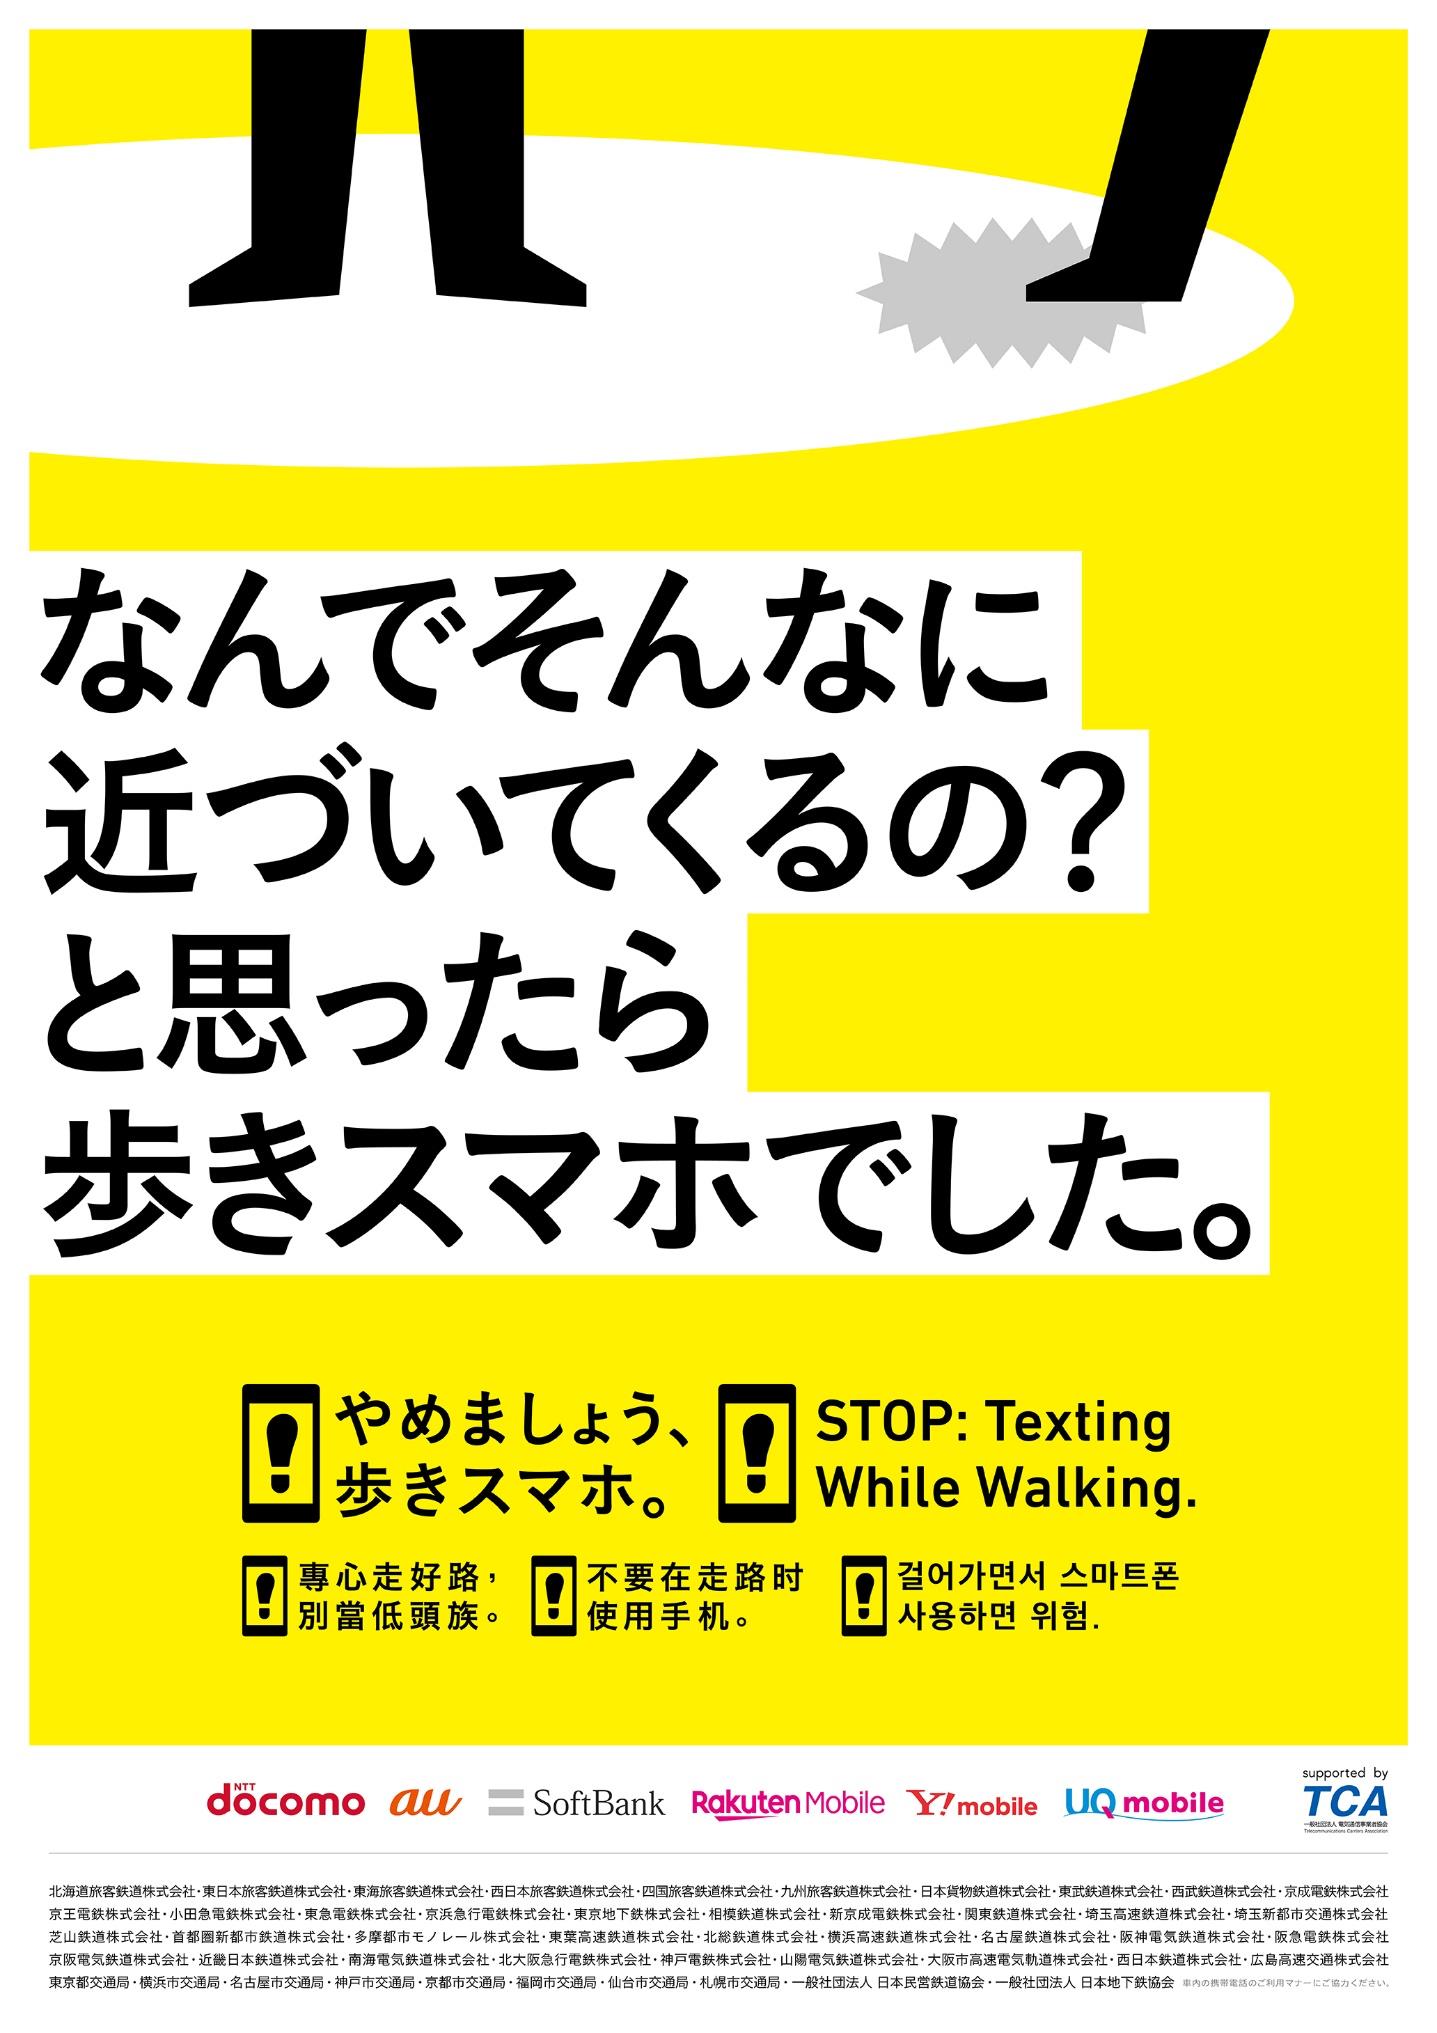 やめましょう 歩きスマホ キャンペーンを実施 10 1 10 31 新京成電鉄株式会社